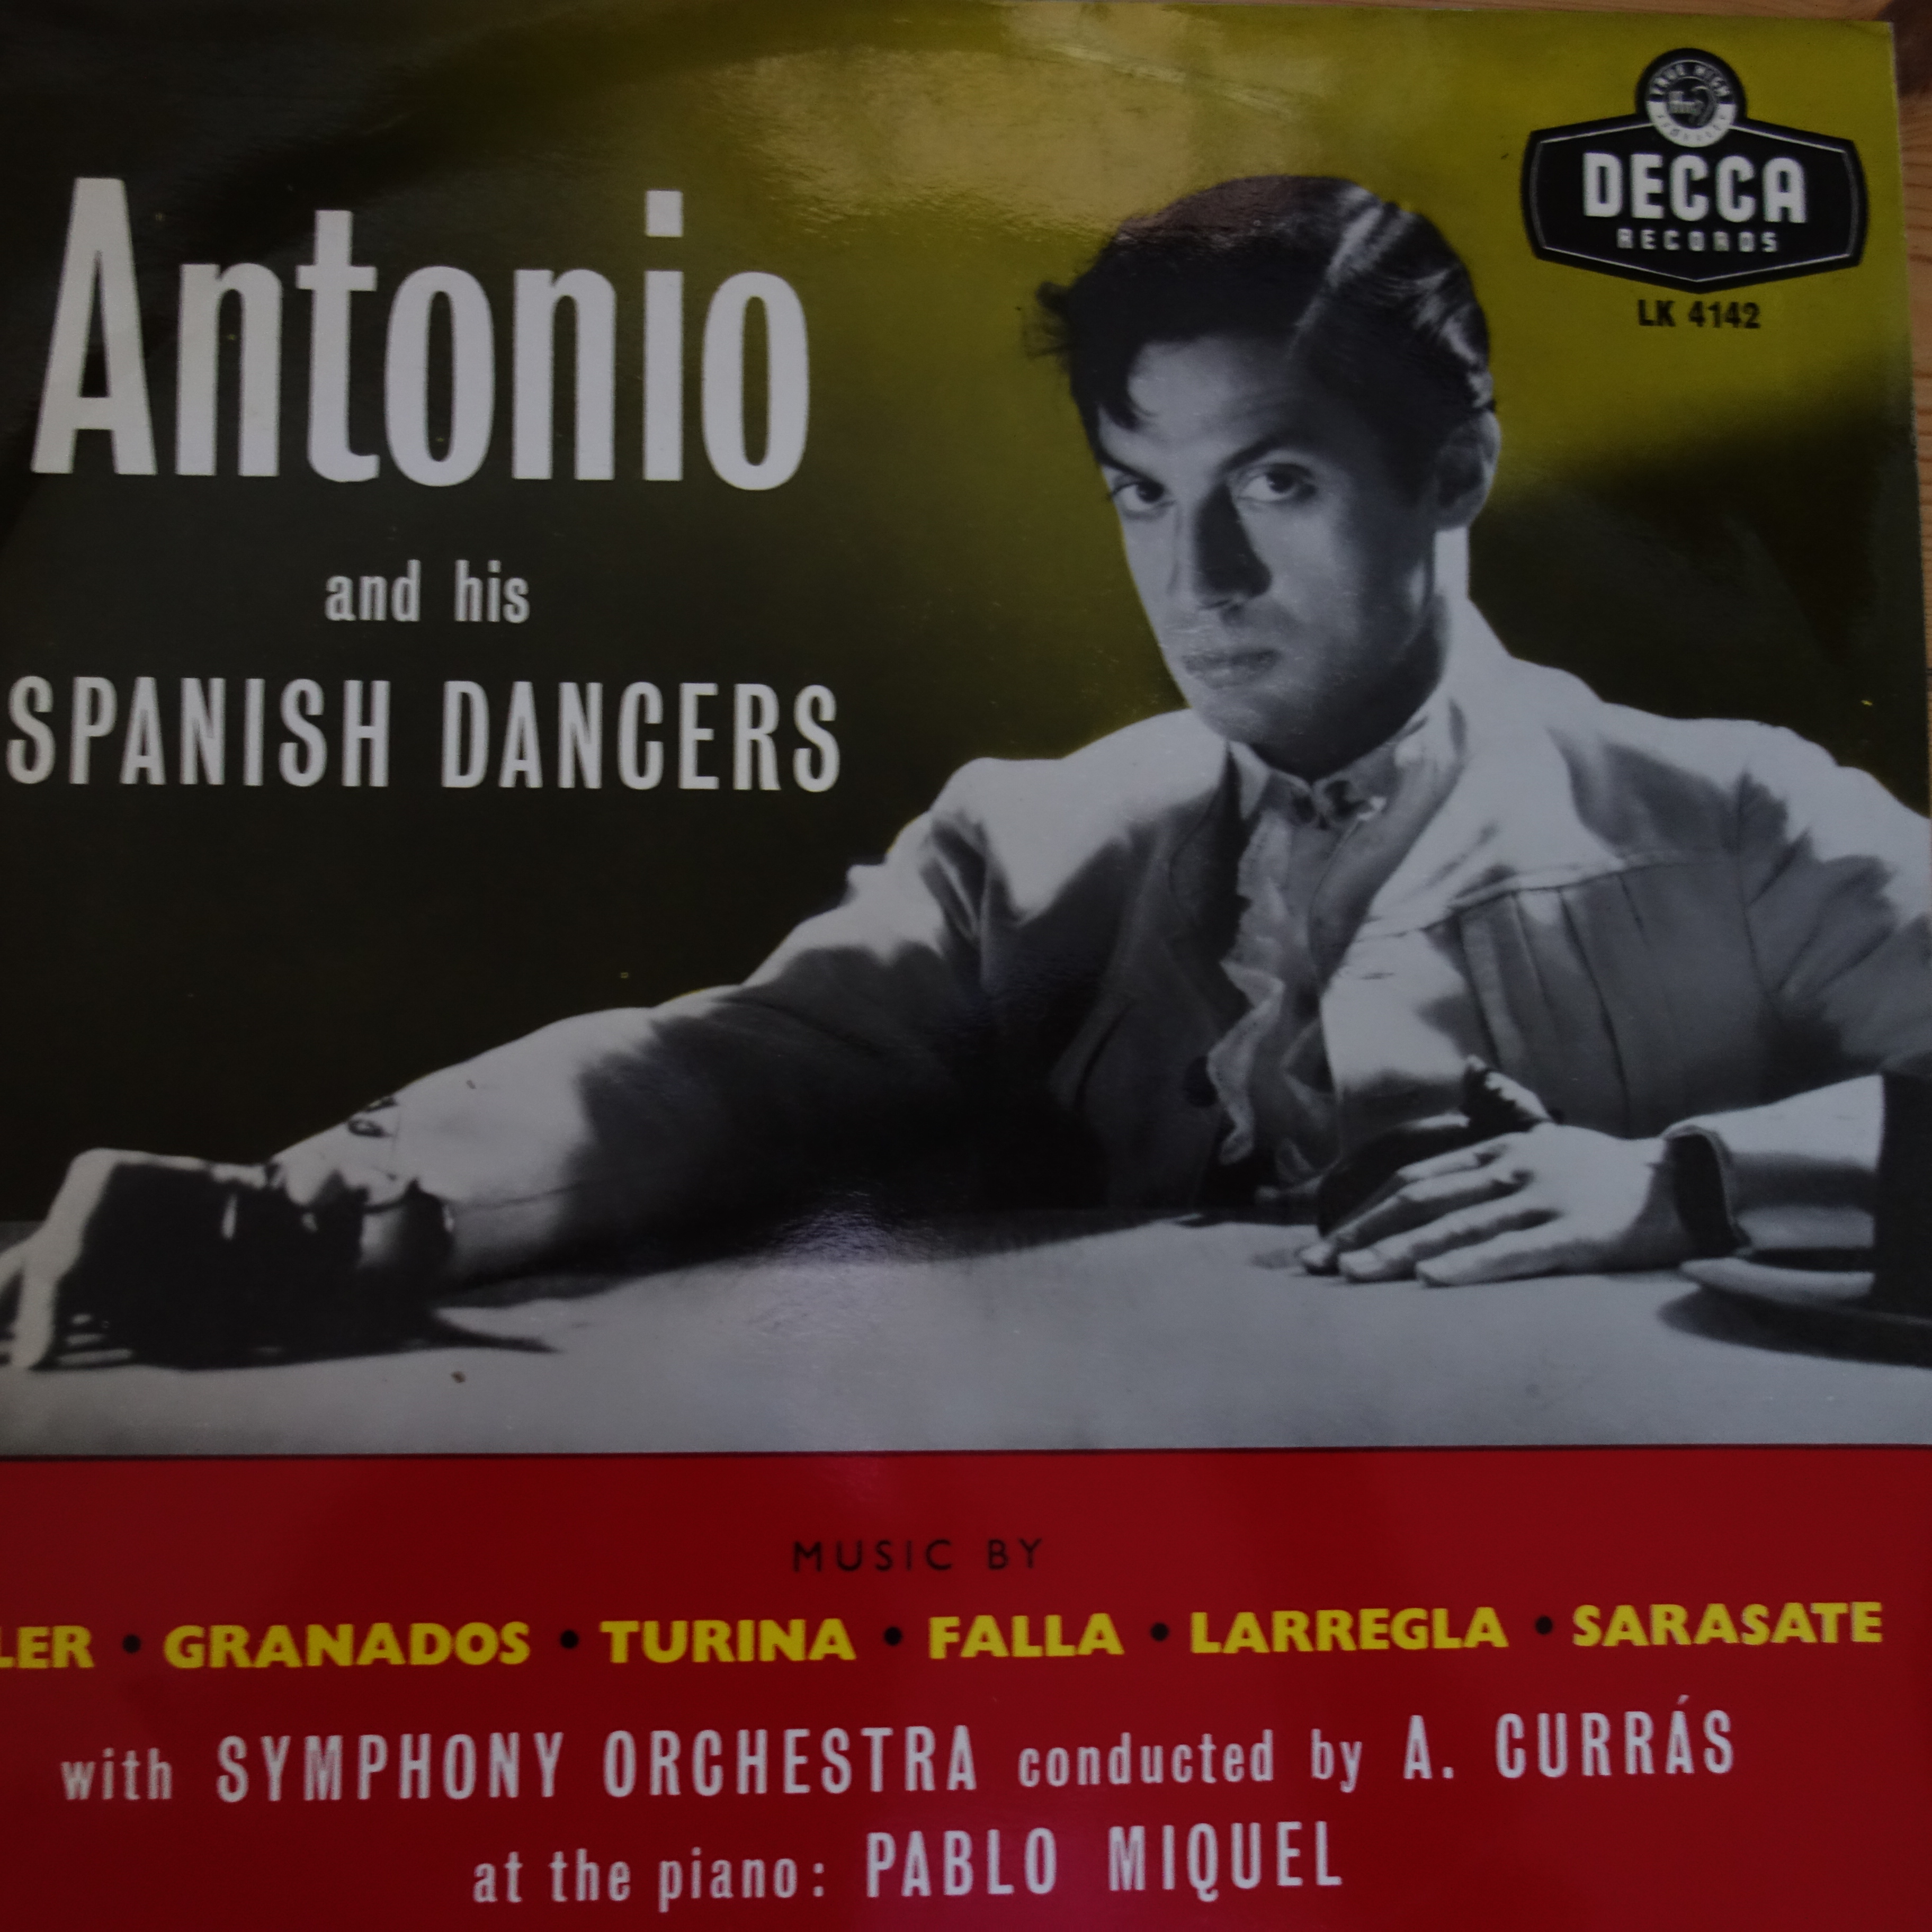 LK 4142 Antonio and His Spanish Dances / Soler, Franados, Turina, Falla, Larregla, Sarasate